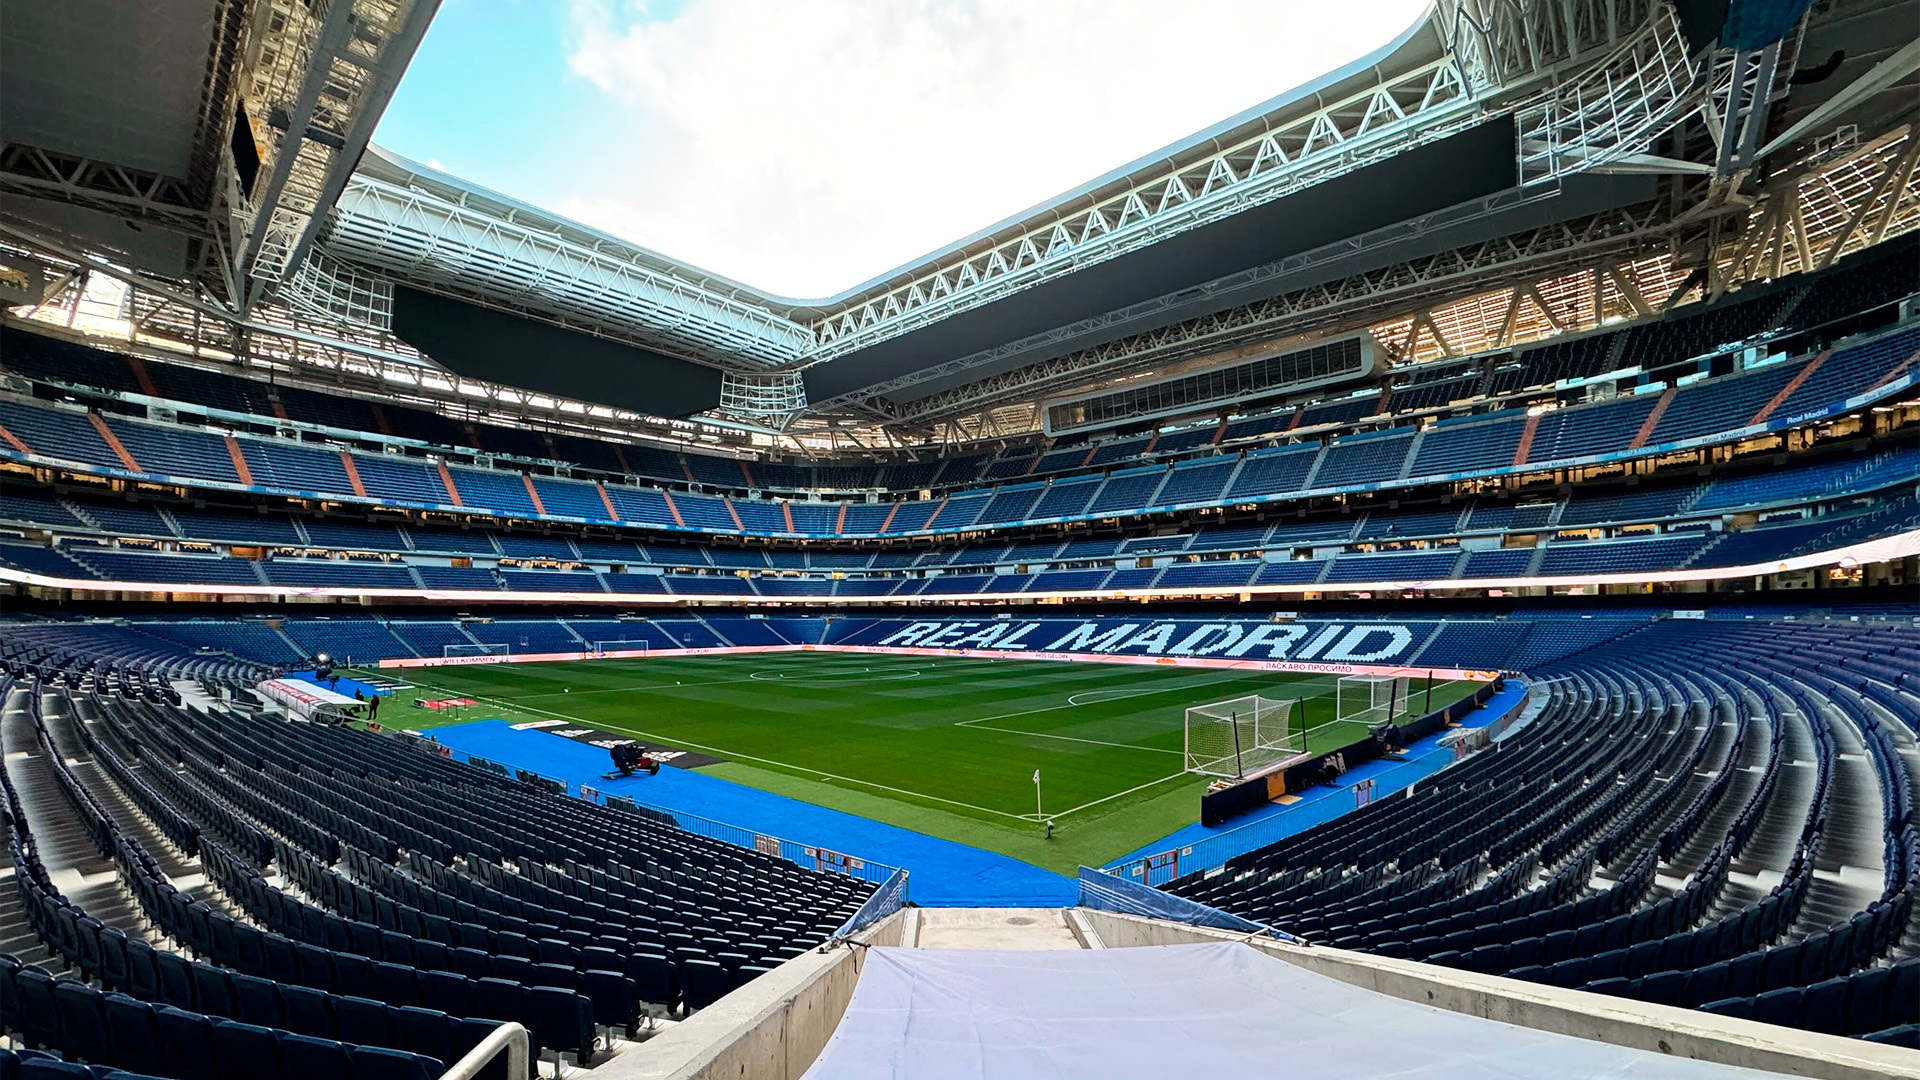 Estadio Santiago Bernabéu view